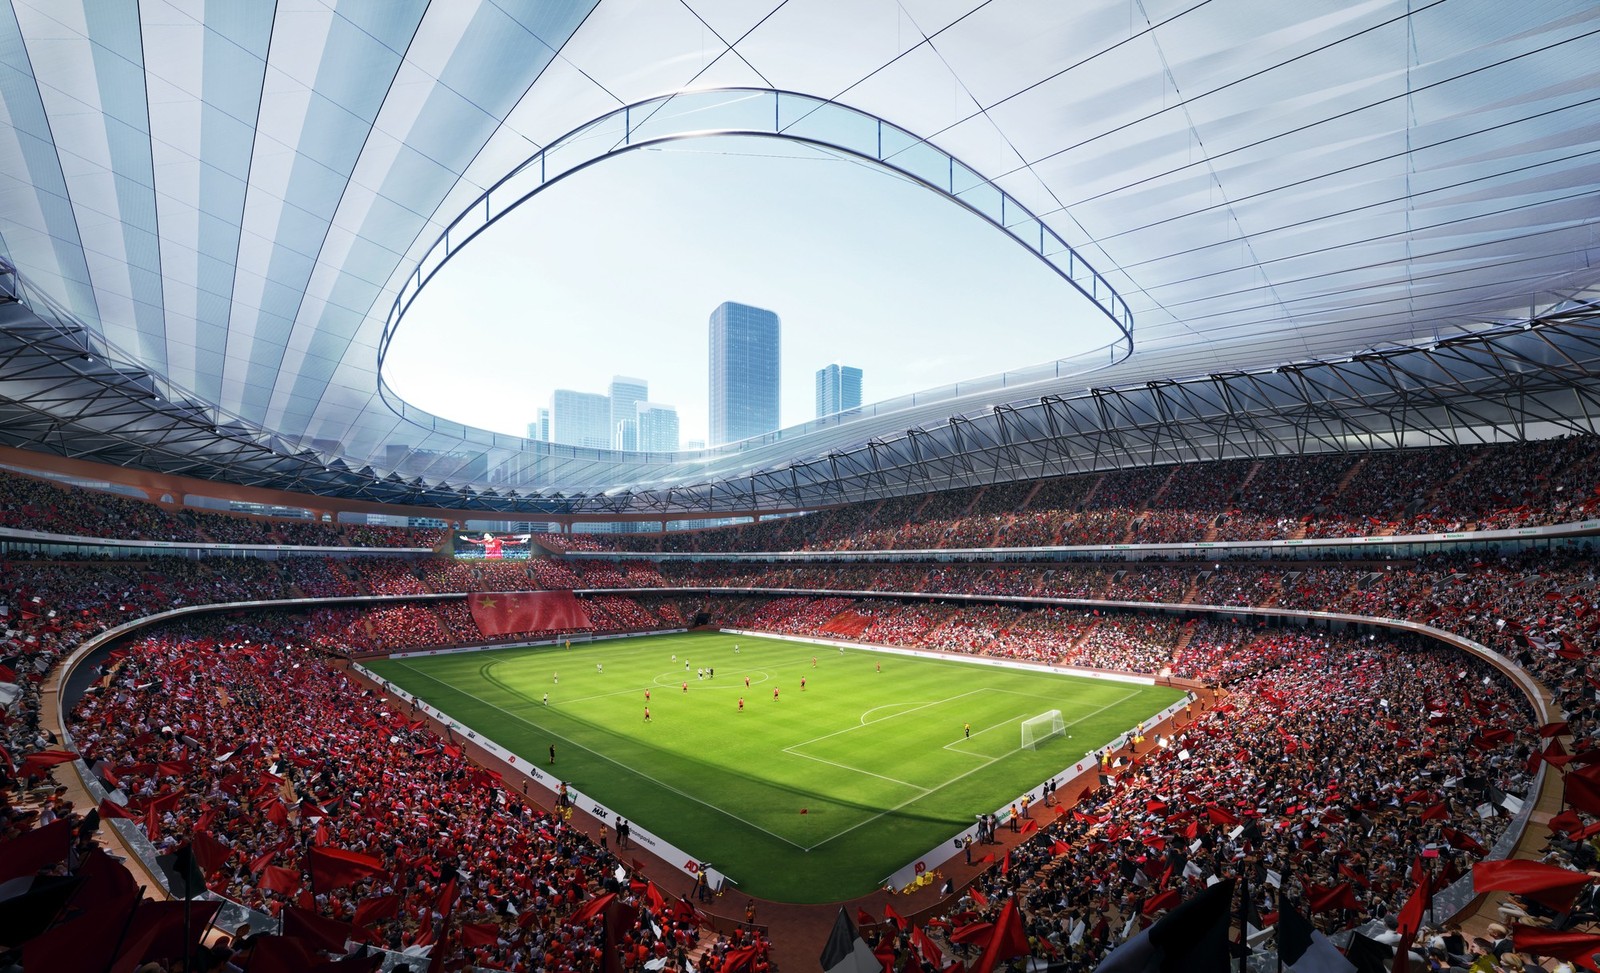 Xi'an International Football Centre Stadium